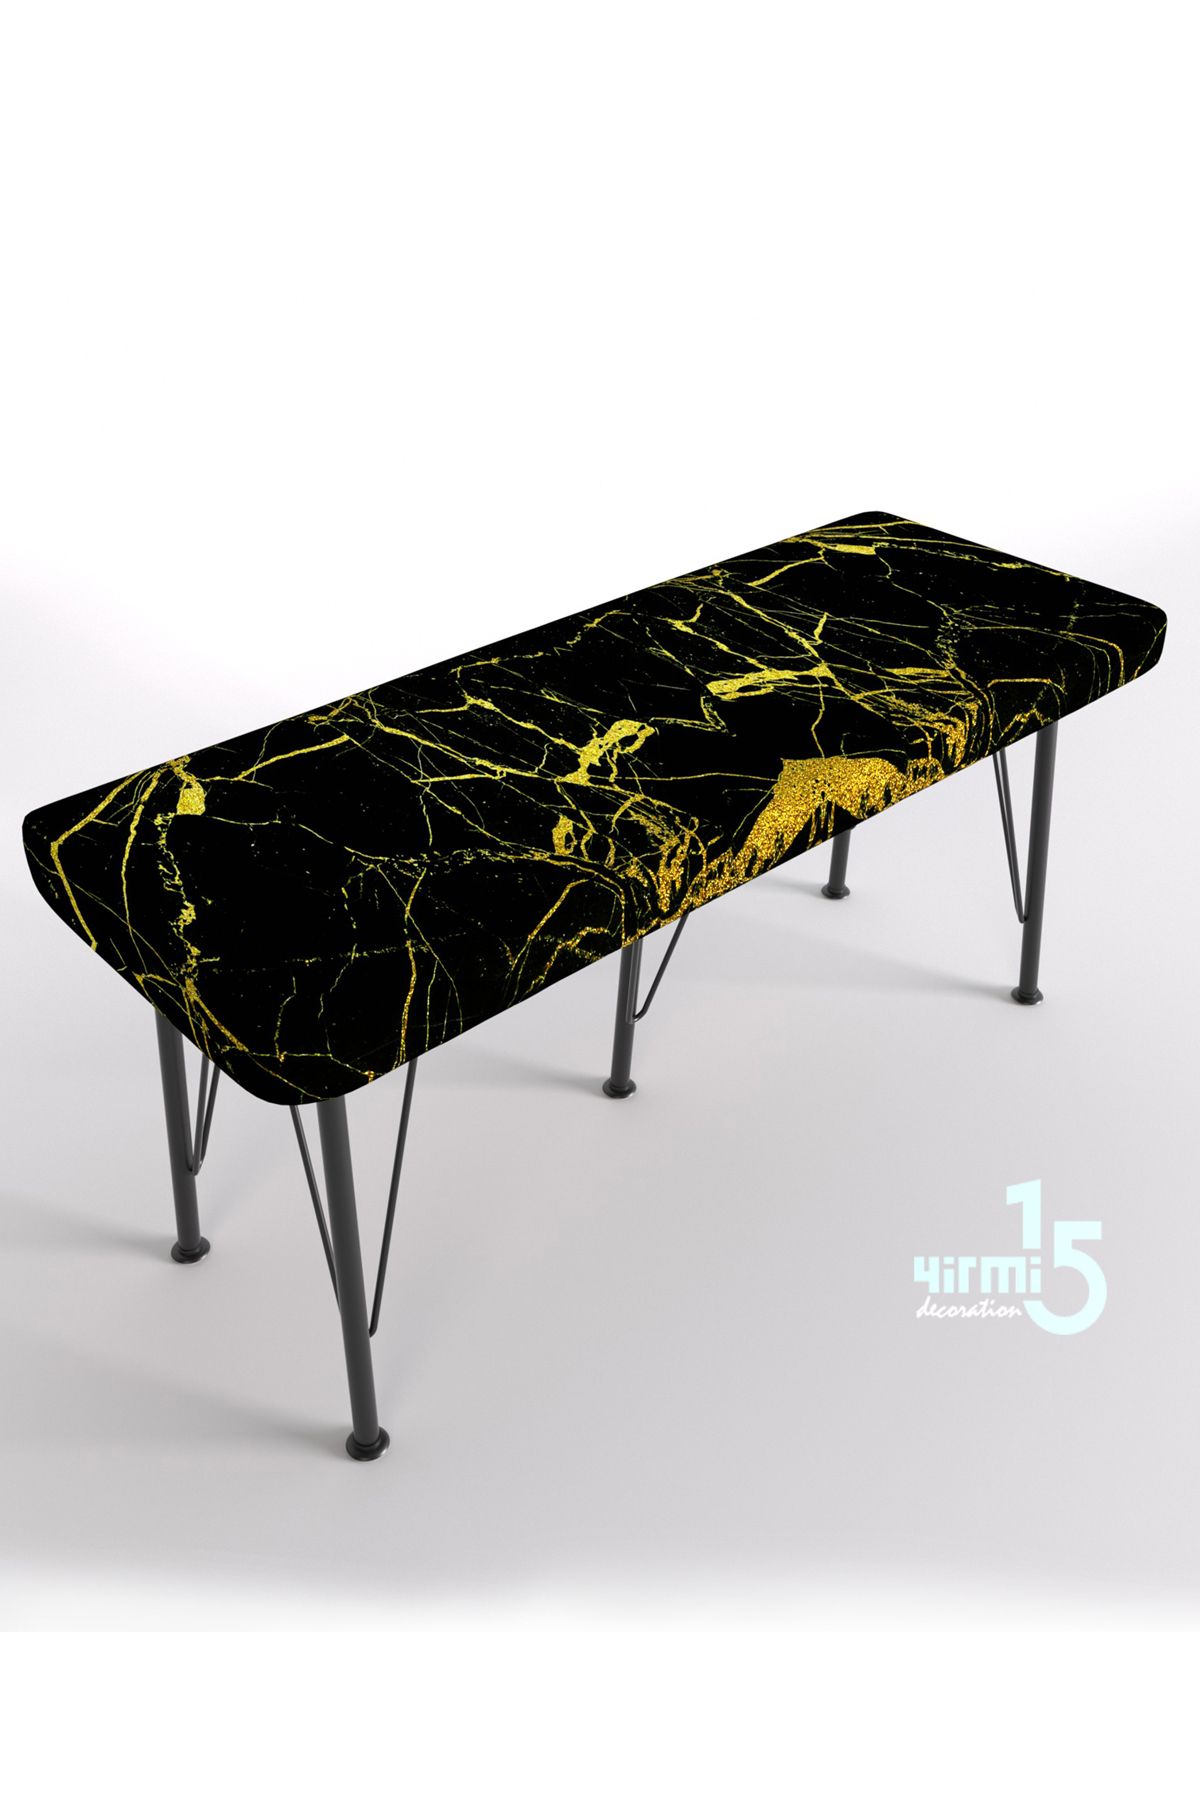 Yirmi15 Metal Ayaklı Babyface Puf & Bench - Black and Gold Baskılı Bench Siyah Mermer desen bench